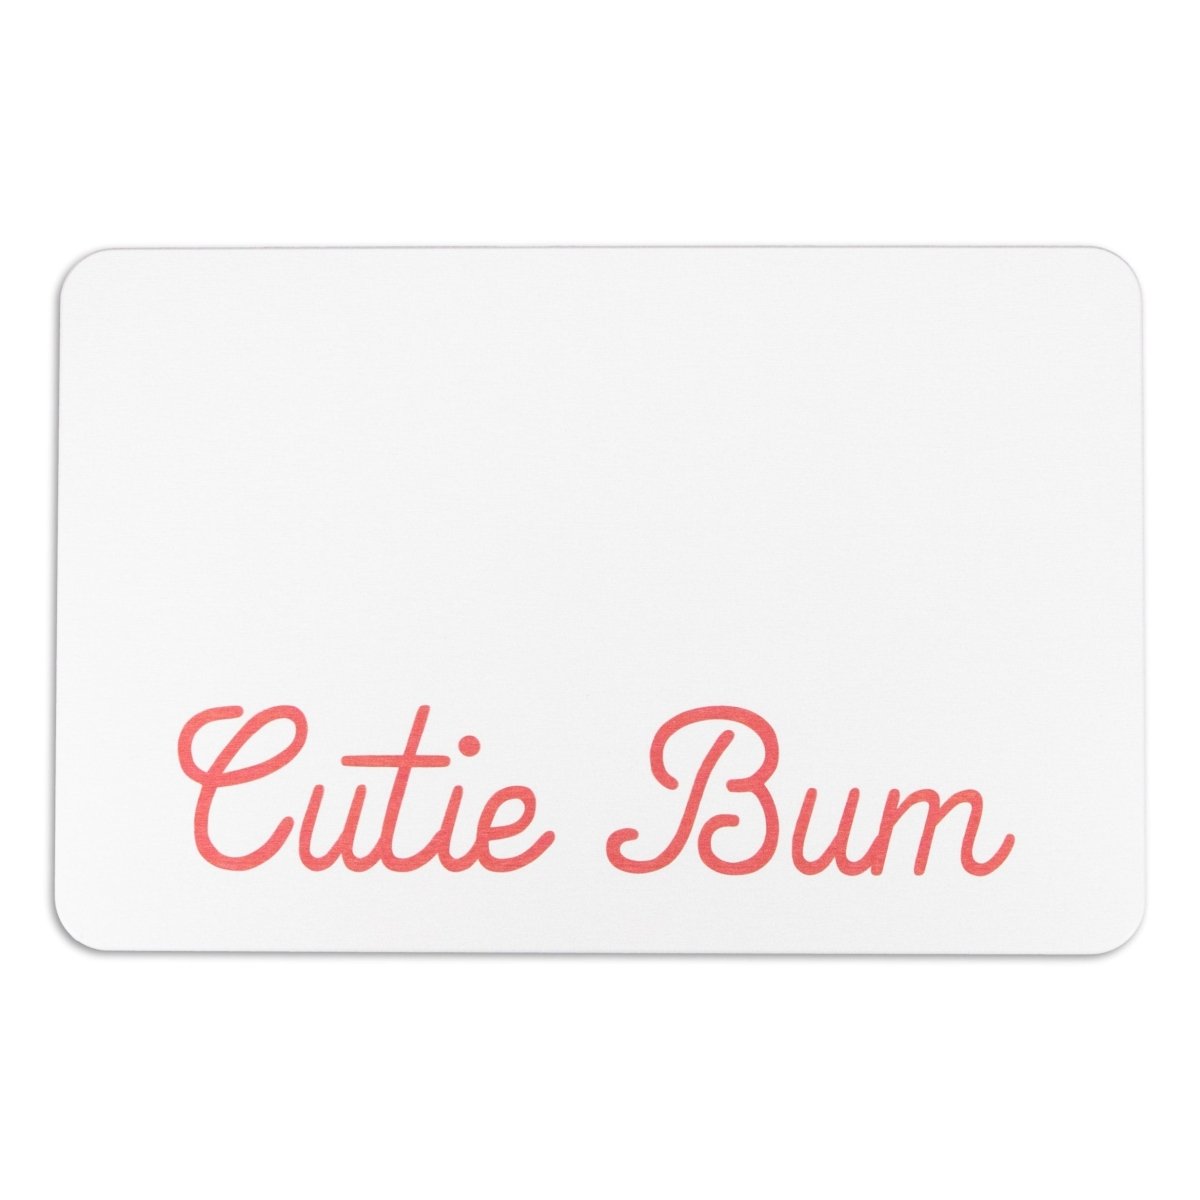 Cutie Bum Bathmat - Funny Quote Bathroom Rug - White Bath Mat - Colorful Bathroom Decor - Fun Bath Mats - White Stone Non Slip Bath Mat - Slips Away - 1344539017 -